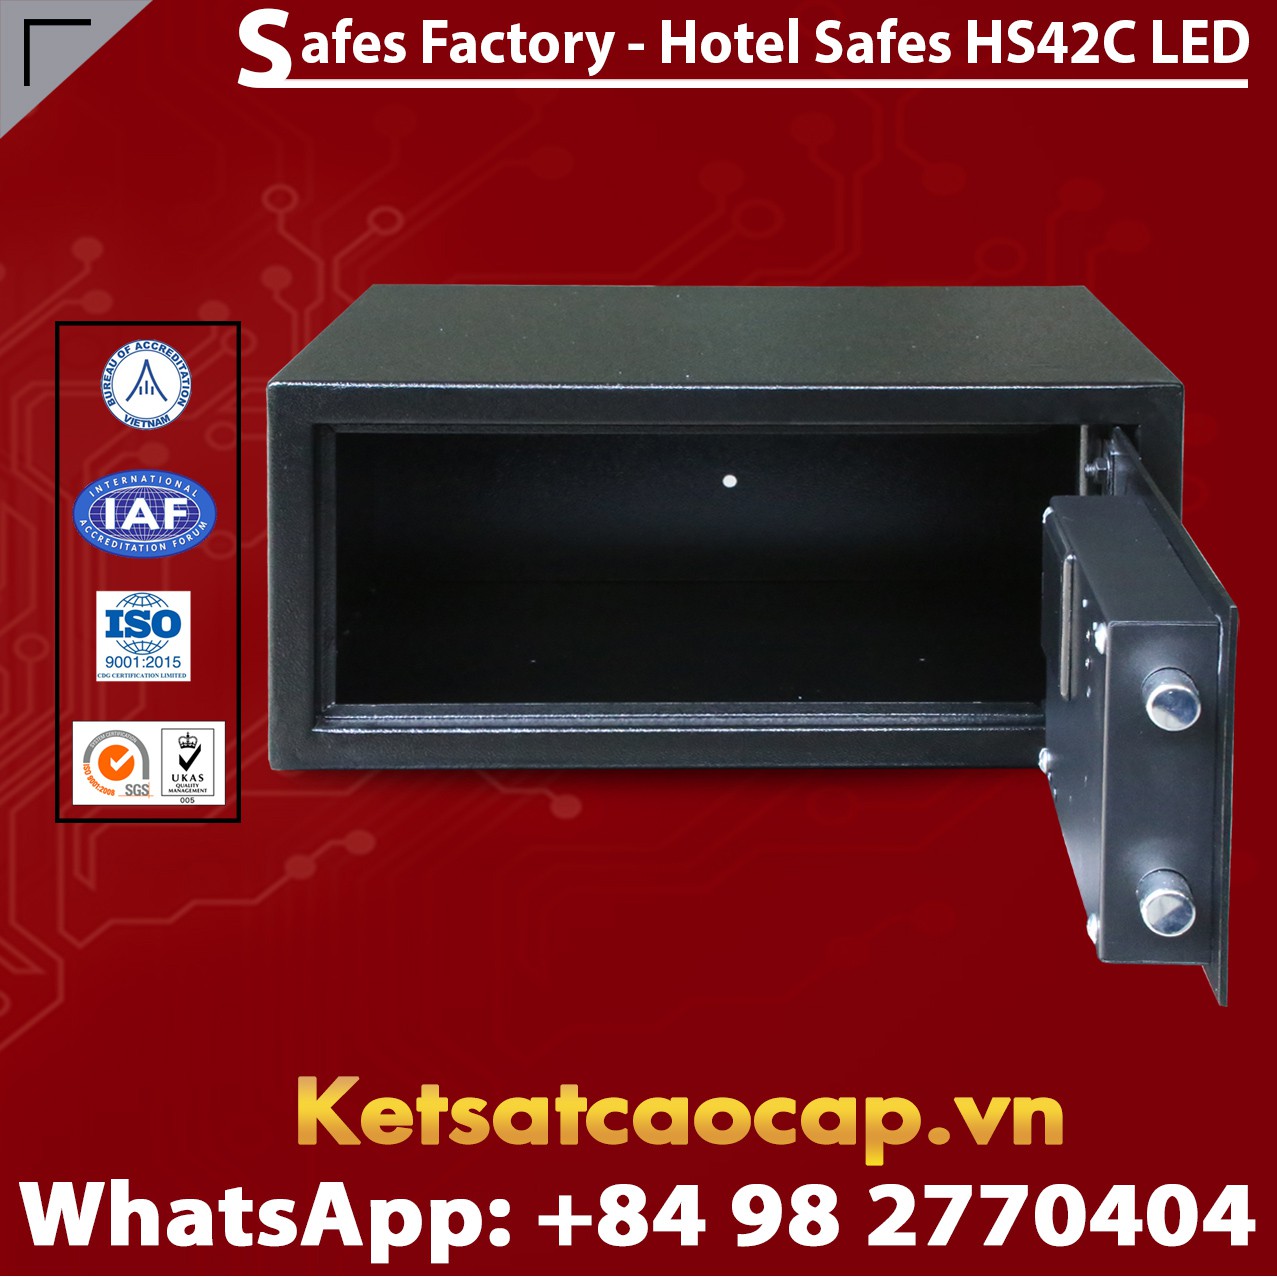 Safe in Hotel WELKO HS42 C LED